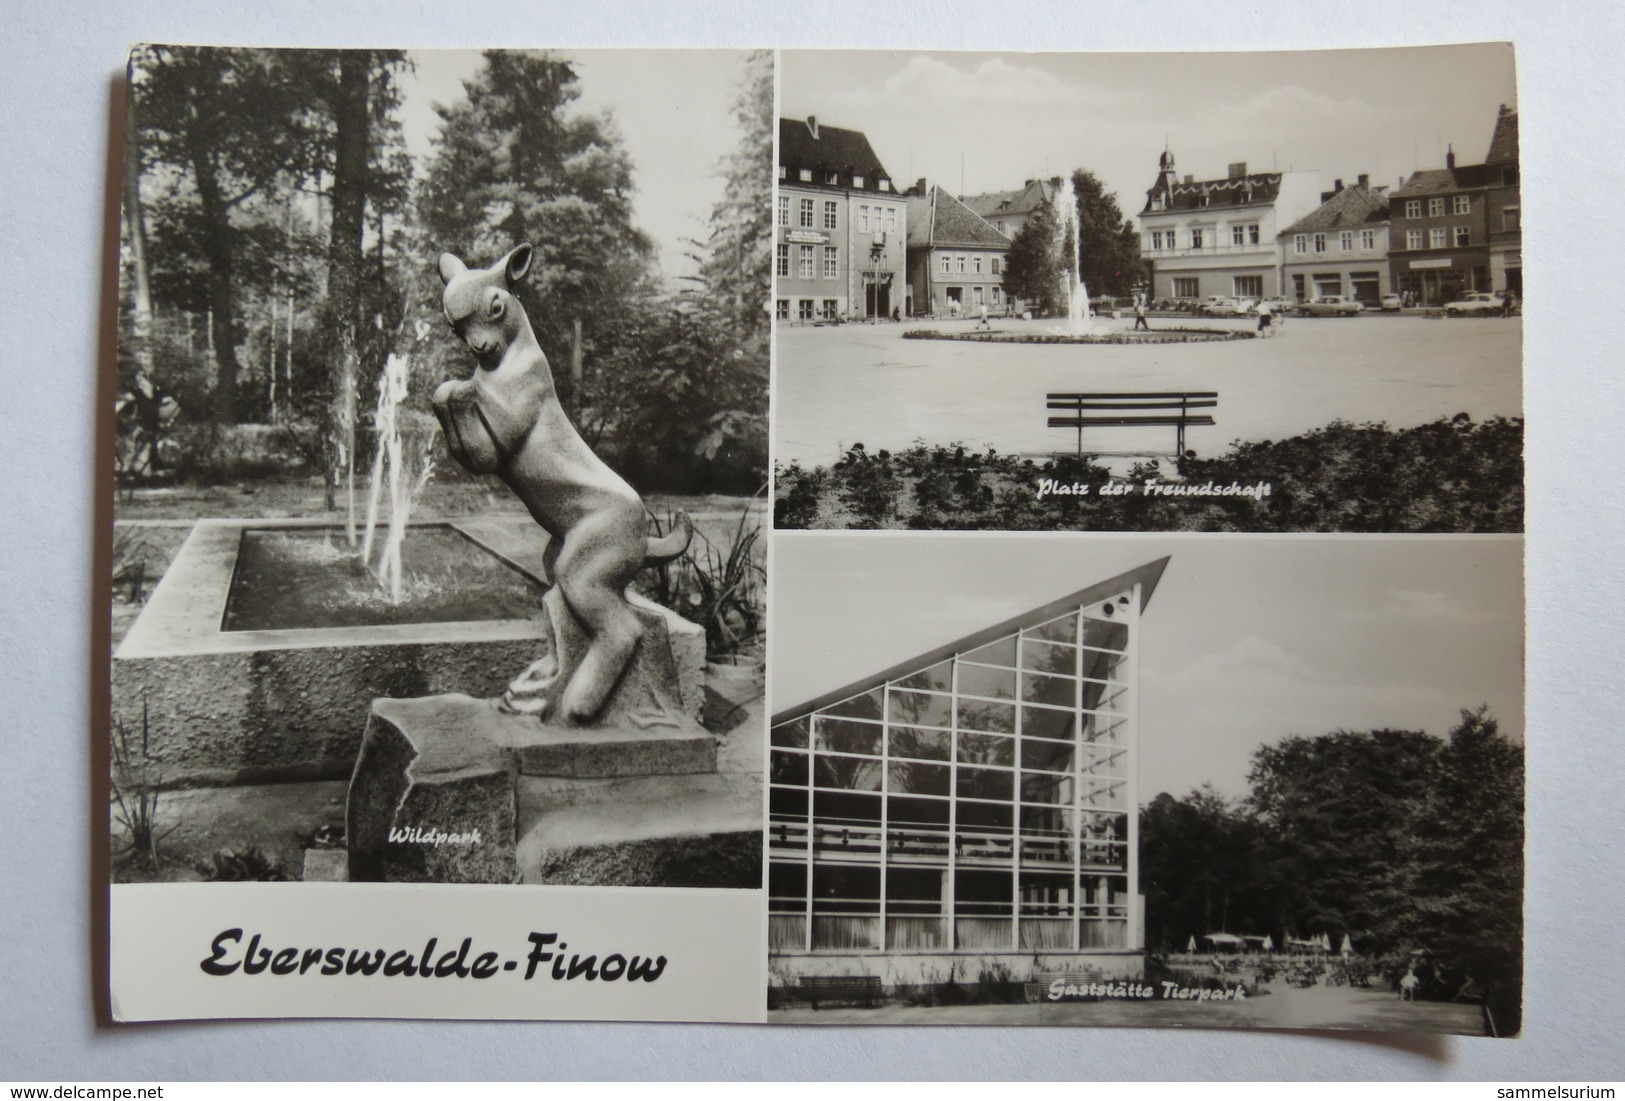 (10/3/87) AK "Eberswalde-Finow" Platz Der Freundschaft, Wildpark Und Gaststätte Tierpark - Eberswalde